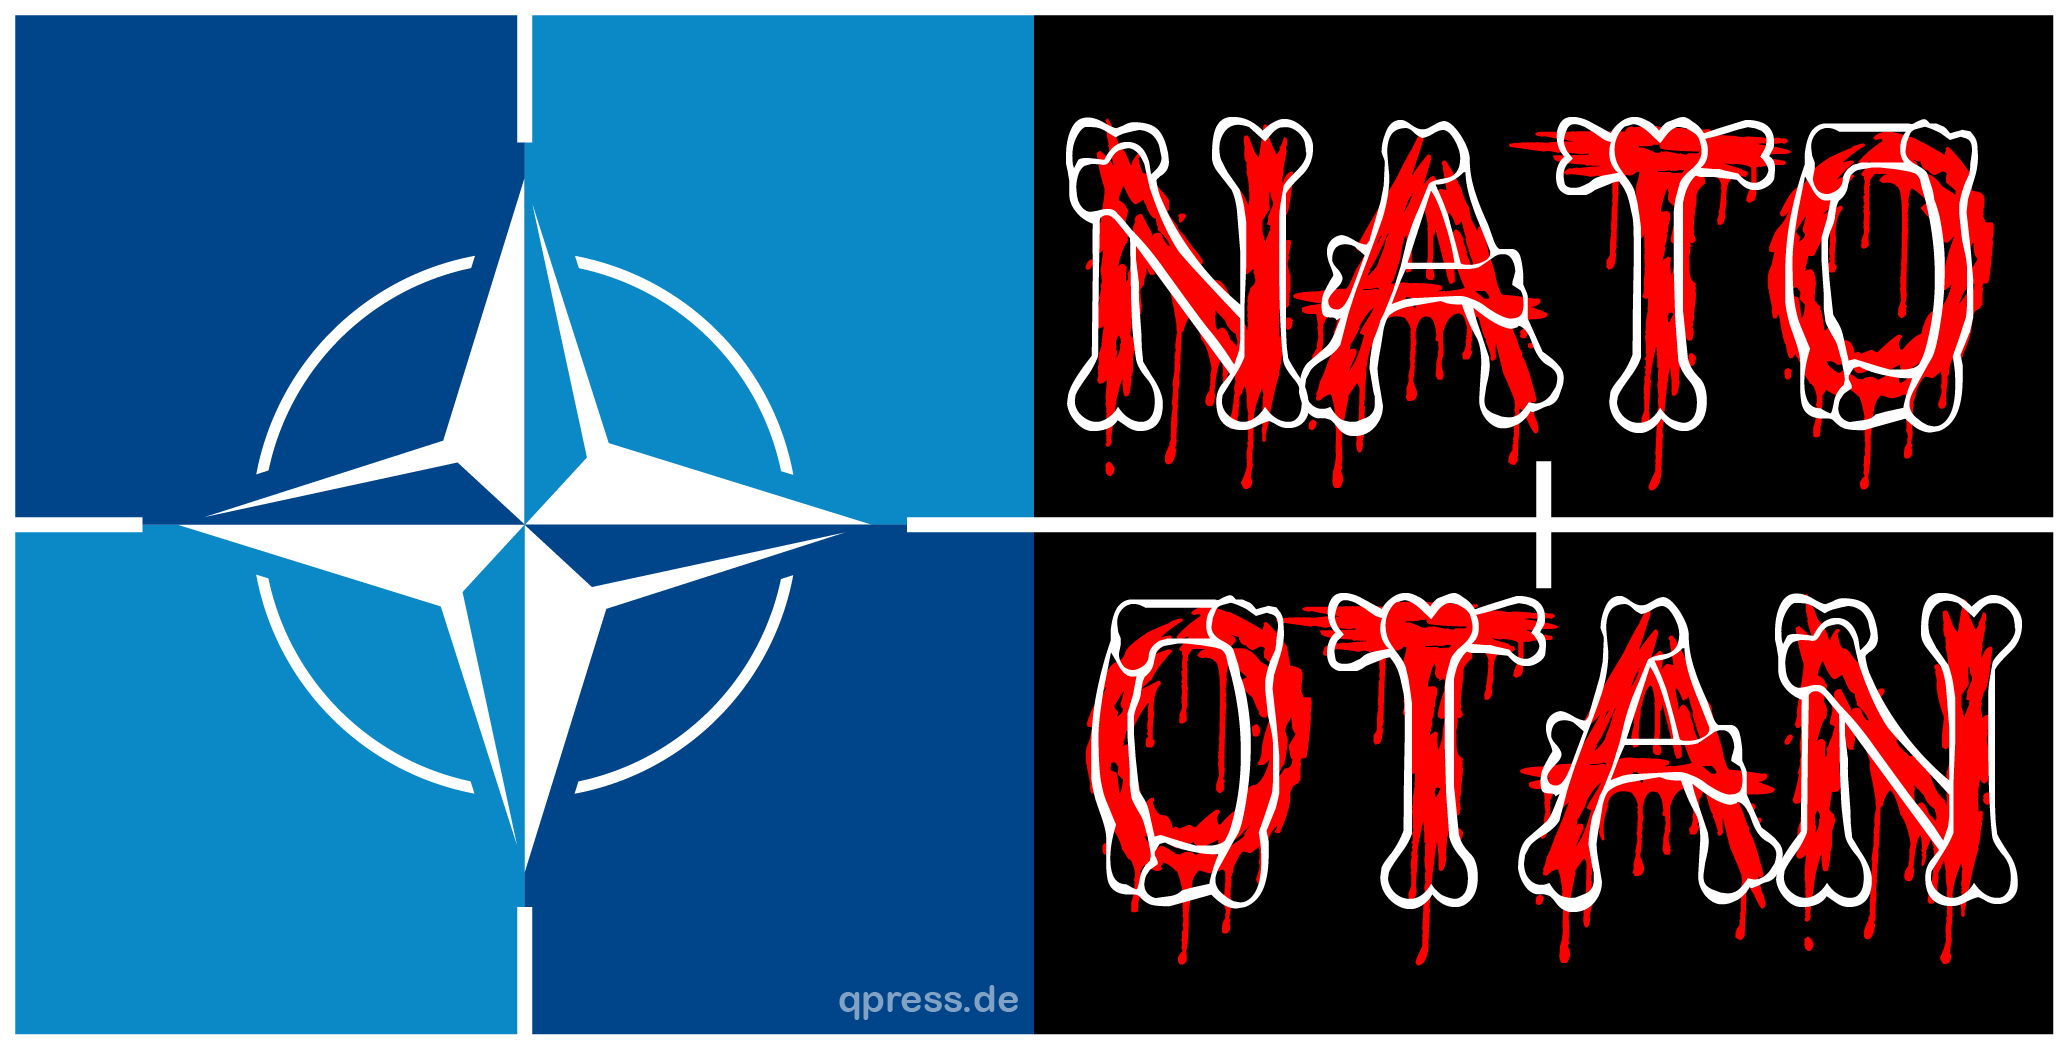 NATO_OTAN_landscape_logo_nord_atlatische_terror_organisation_150_qp